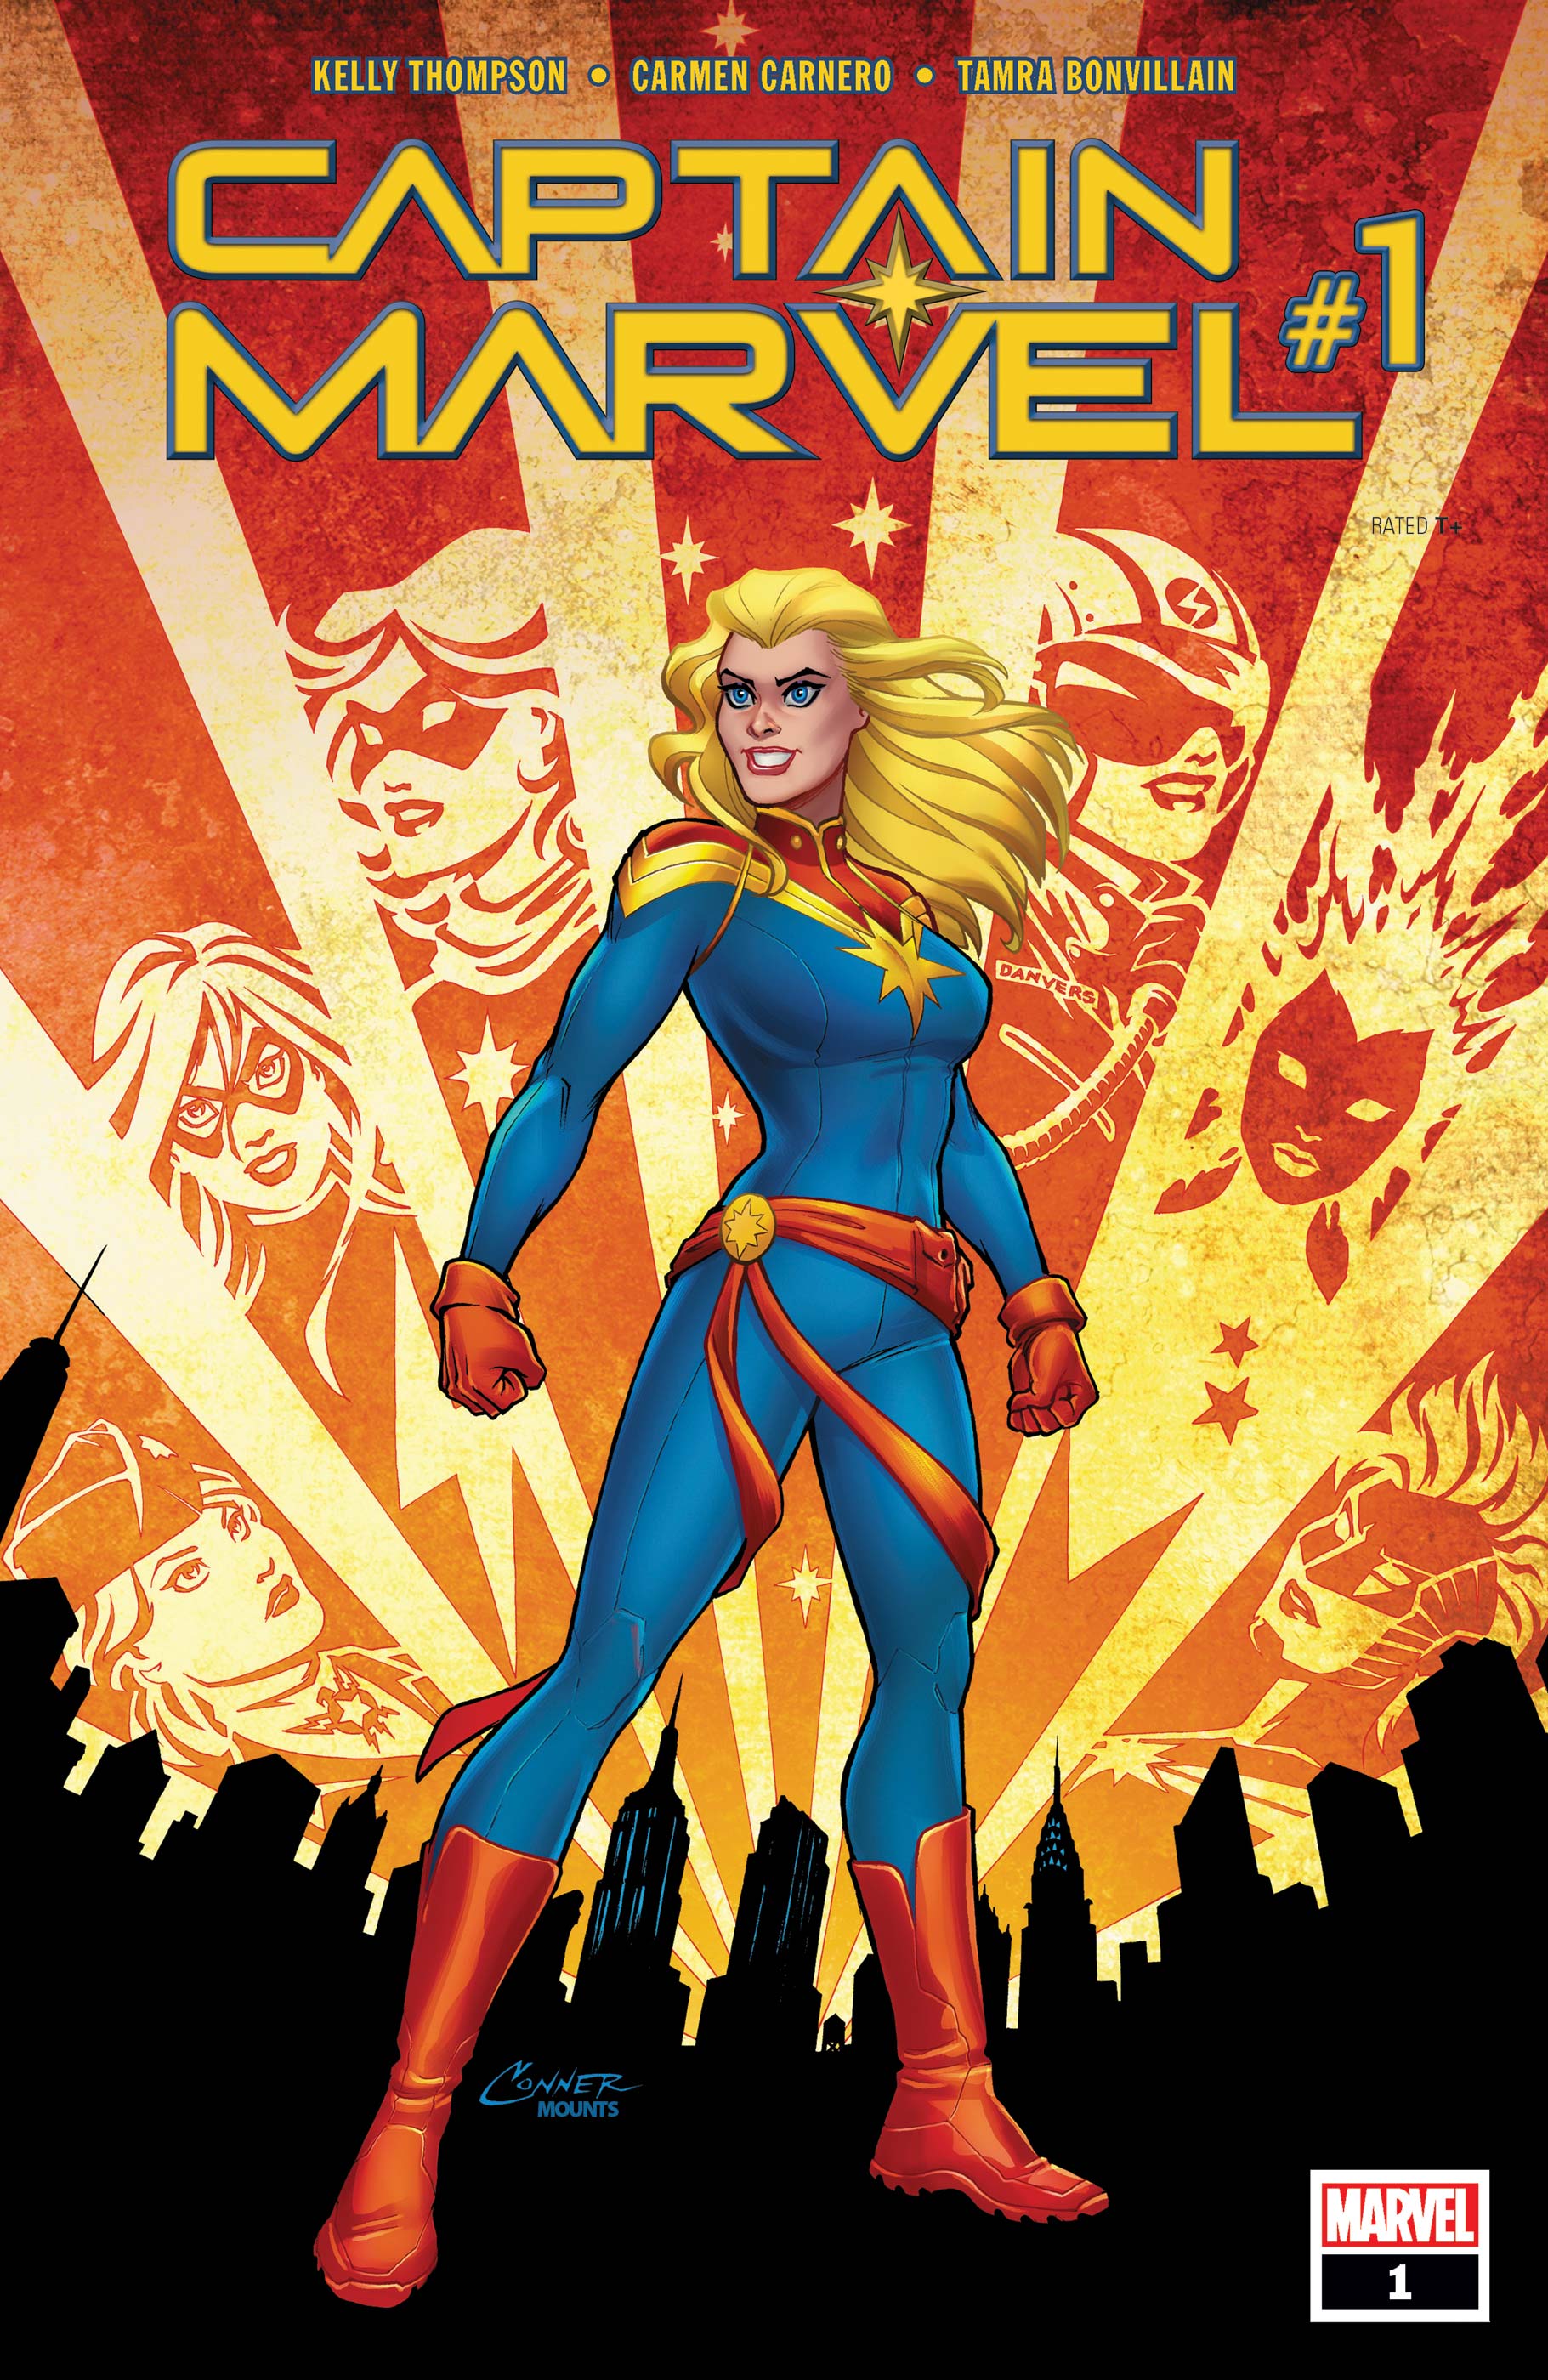 Marvel Cosmic Captain Super Hero Doll 2018 for sale online 